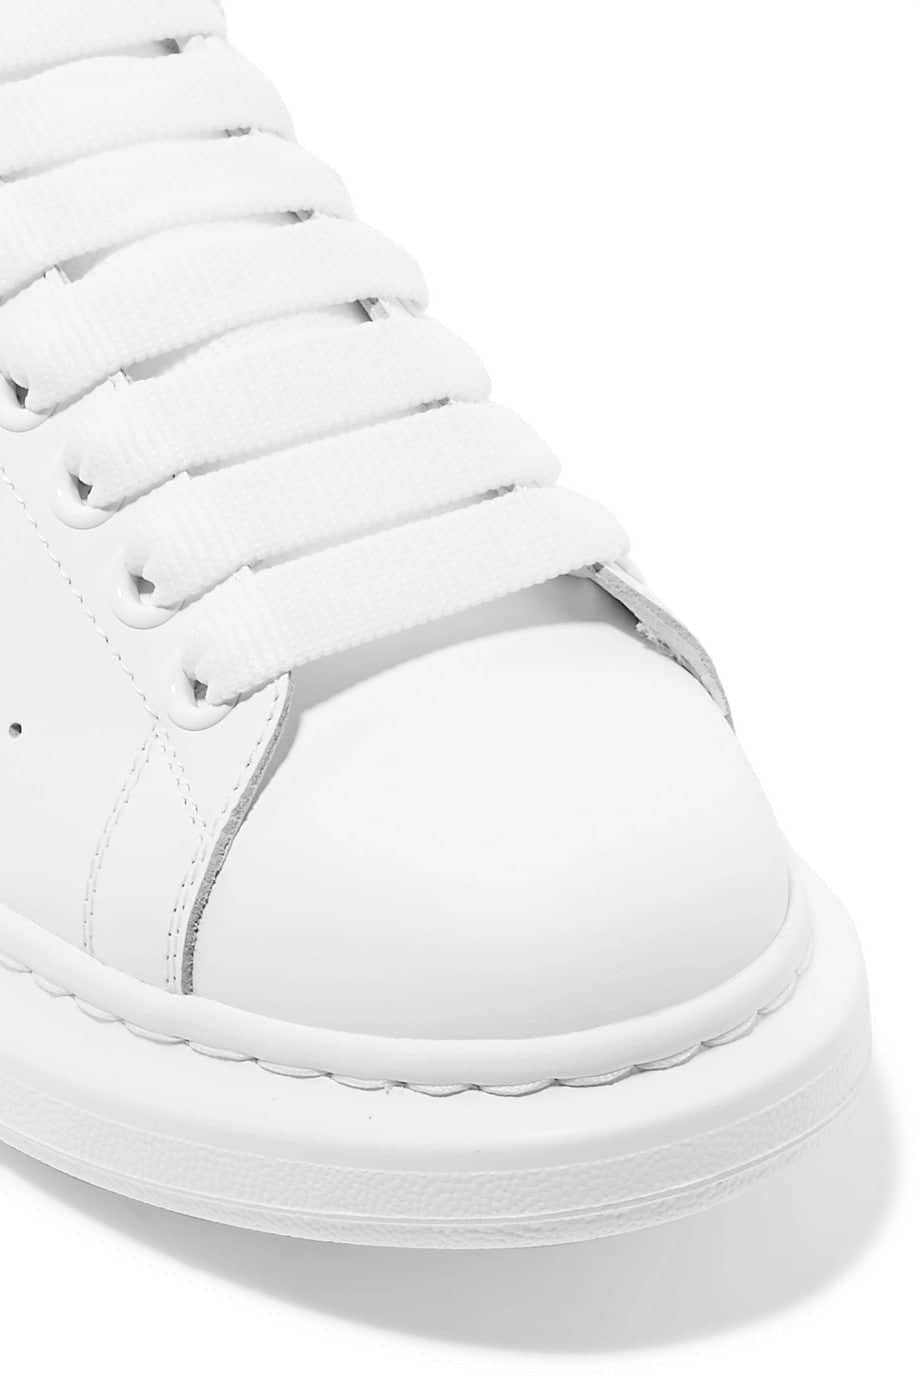 (SALE) ALEXANDER MCQUEEN Oversized low top suede sneaker white/black